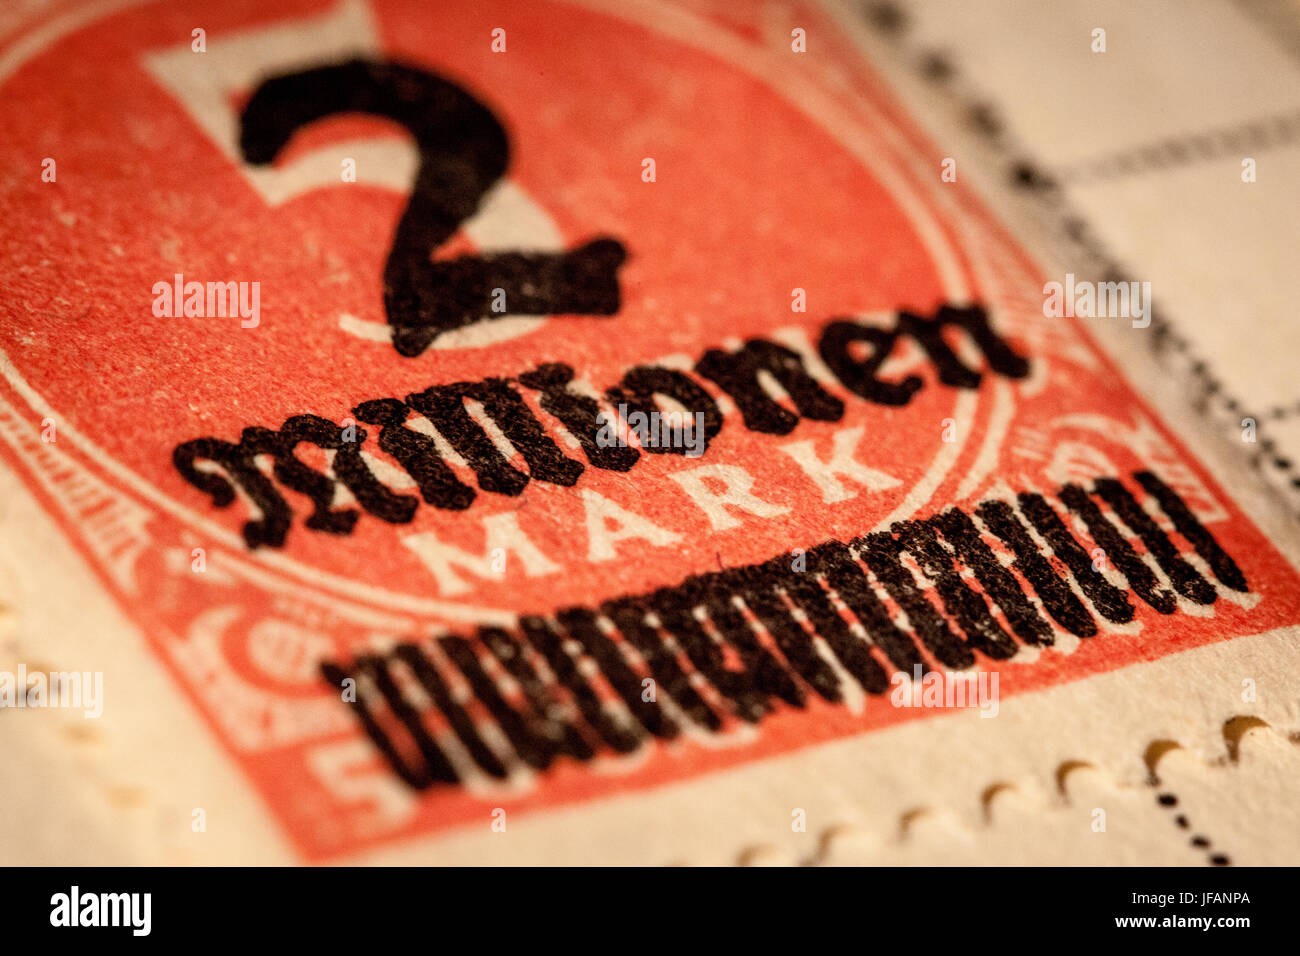 Francobollo inflazione - sovrastampato 2 milioni di francobollo Mark dalla Germania pre-bellica da un momento in cui l'inflazione era dilagante Foto Stock